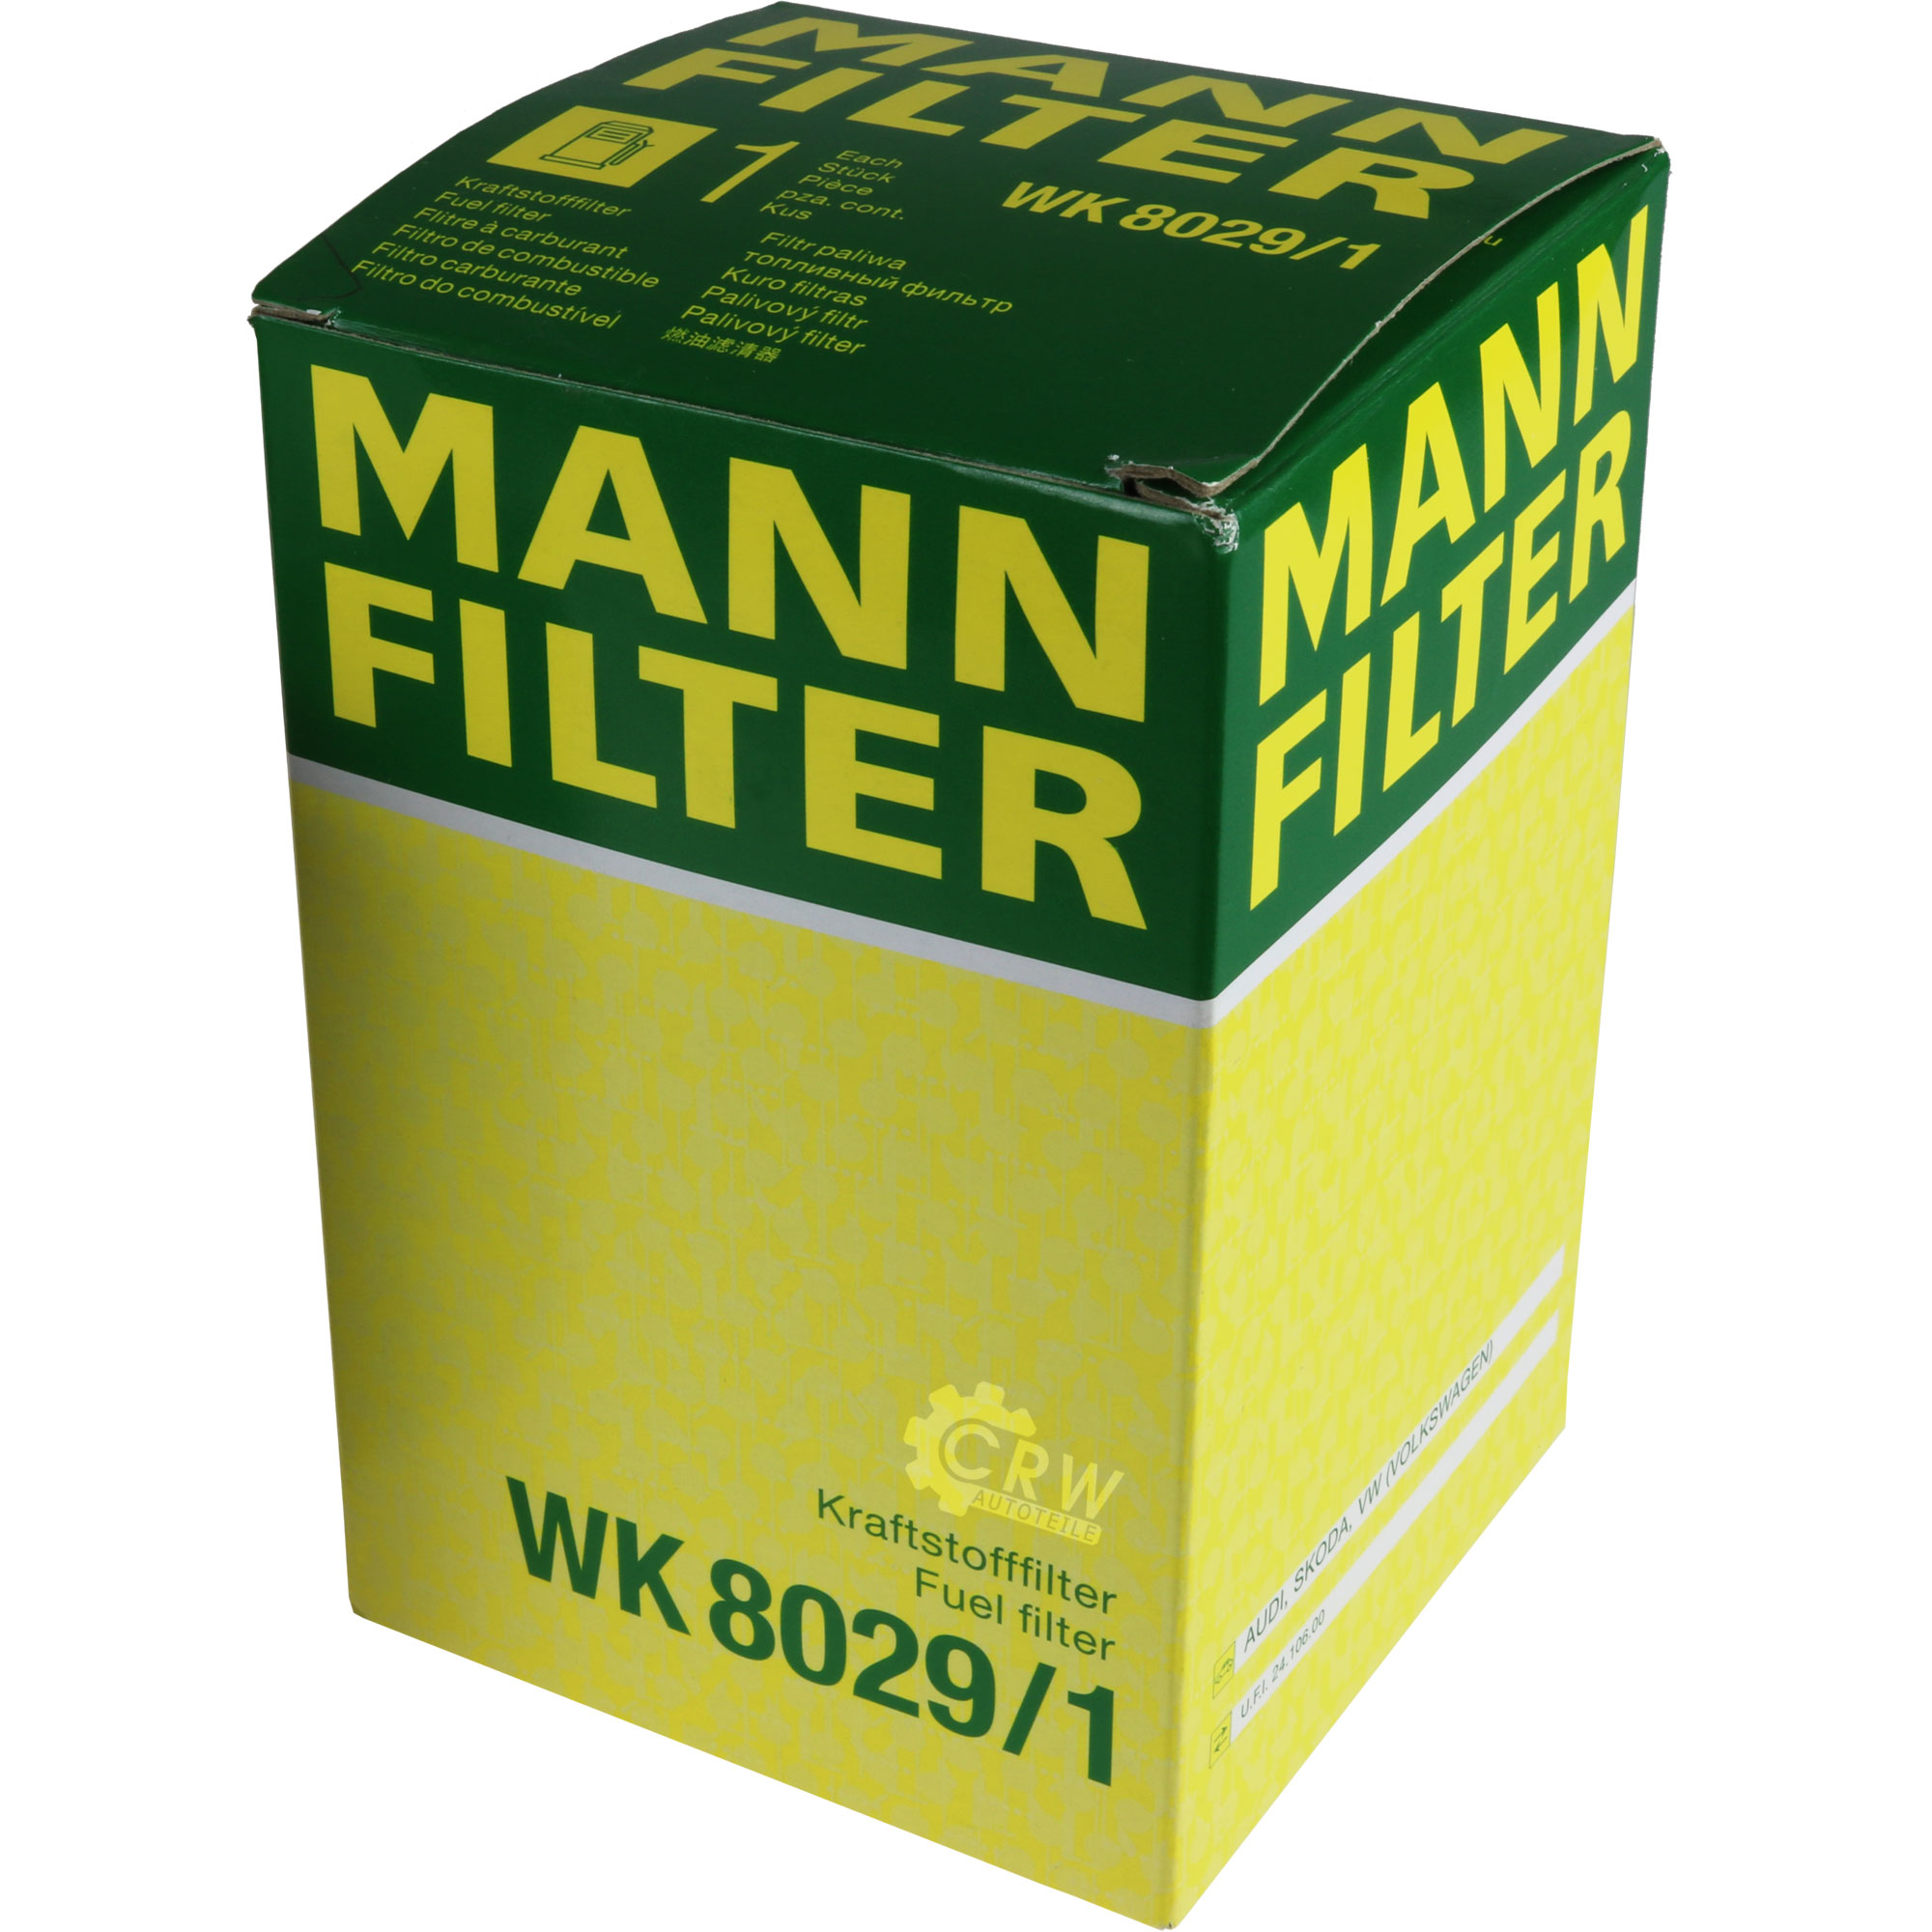 MANN-FILTER Kraftstofffilter WK 8029/1 Fuel Filter